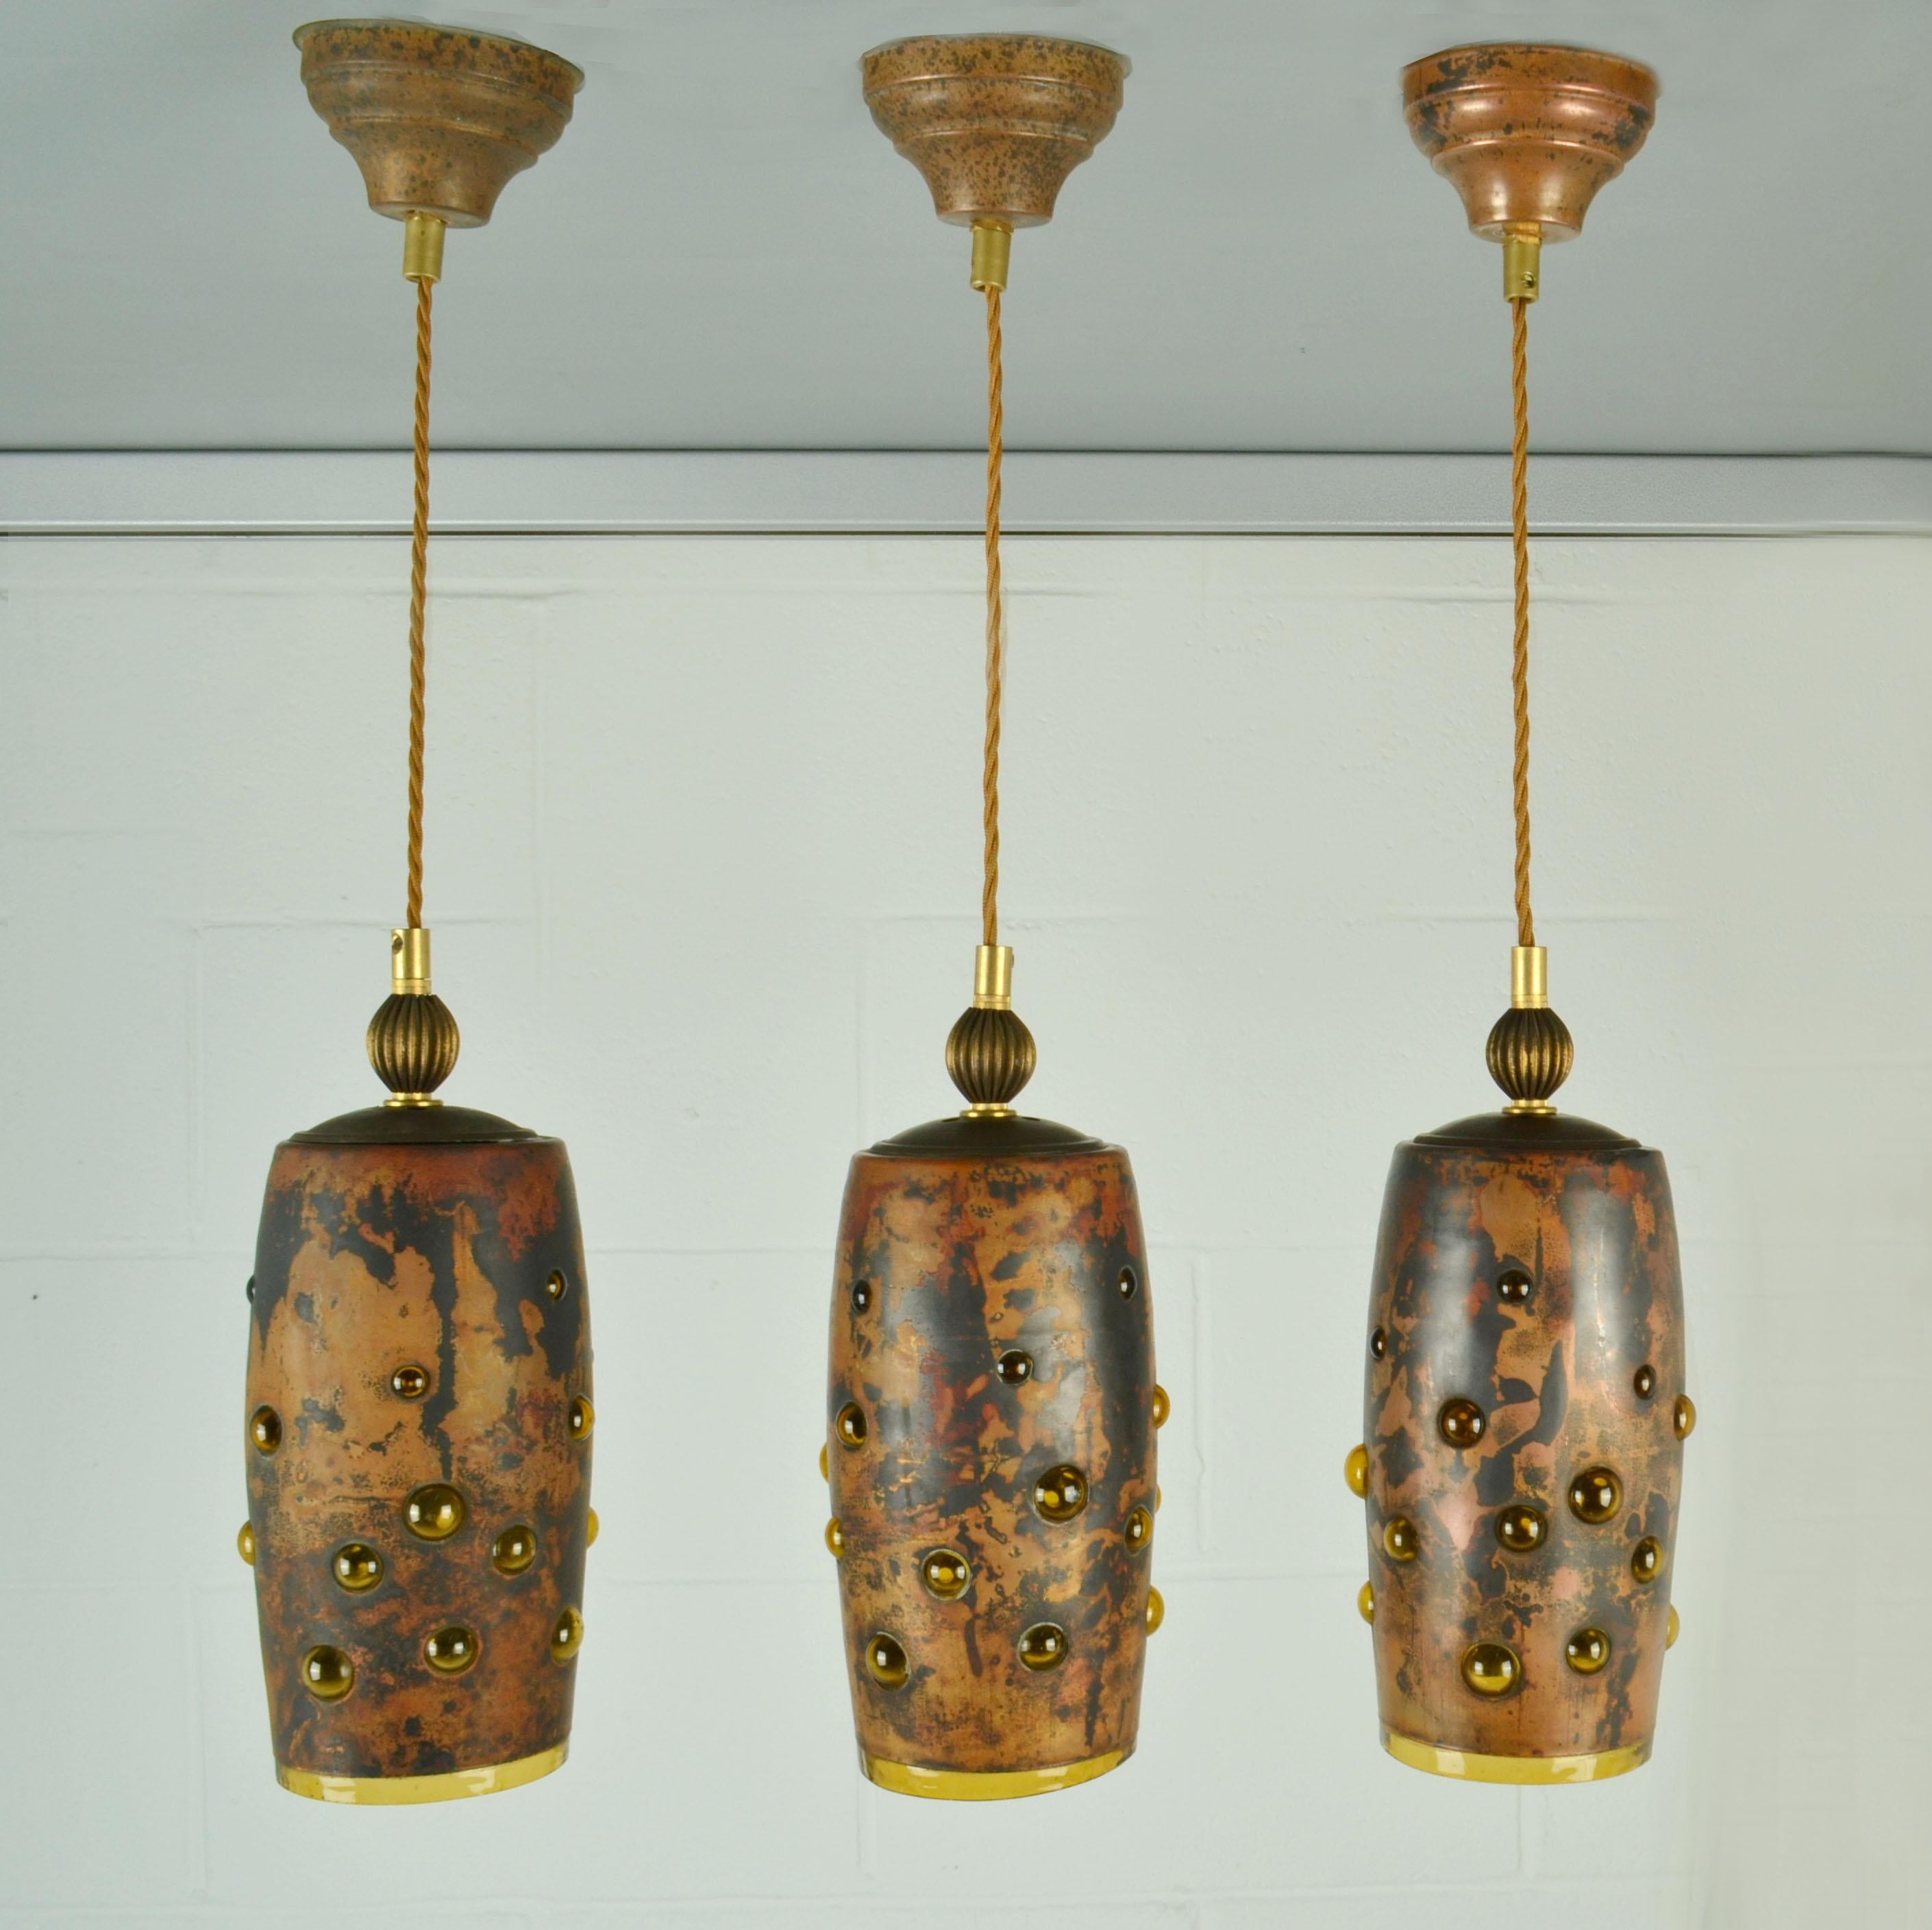 Ensemble de trois lampes suspendues en verre ambré, fabriquées à partir de verre soufflé et de cuivre oxydé. Ils sont tous uniques dans leur exécution. Le verre expansé d'un ambre profond est soufflé avec régularité dans des cadres sphériques